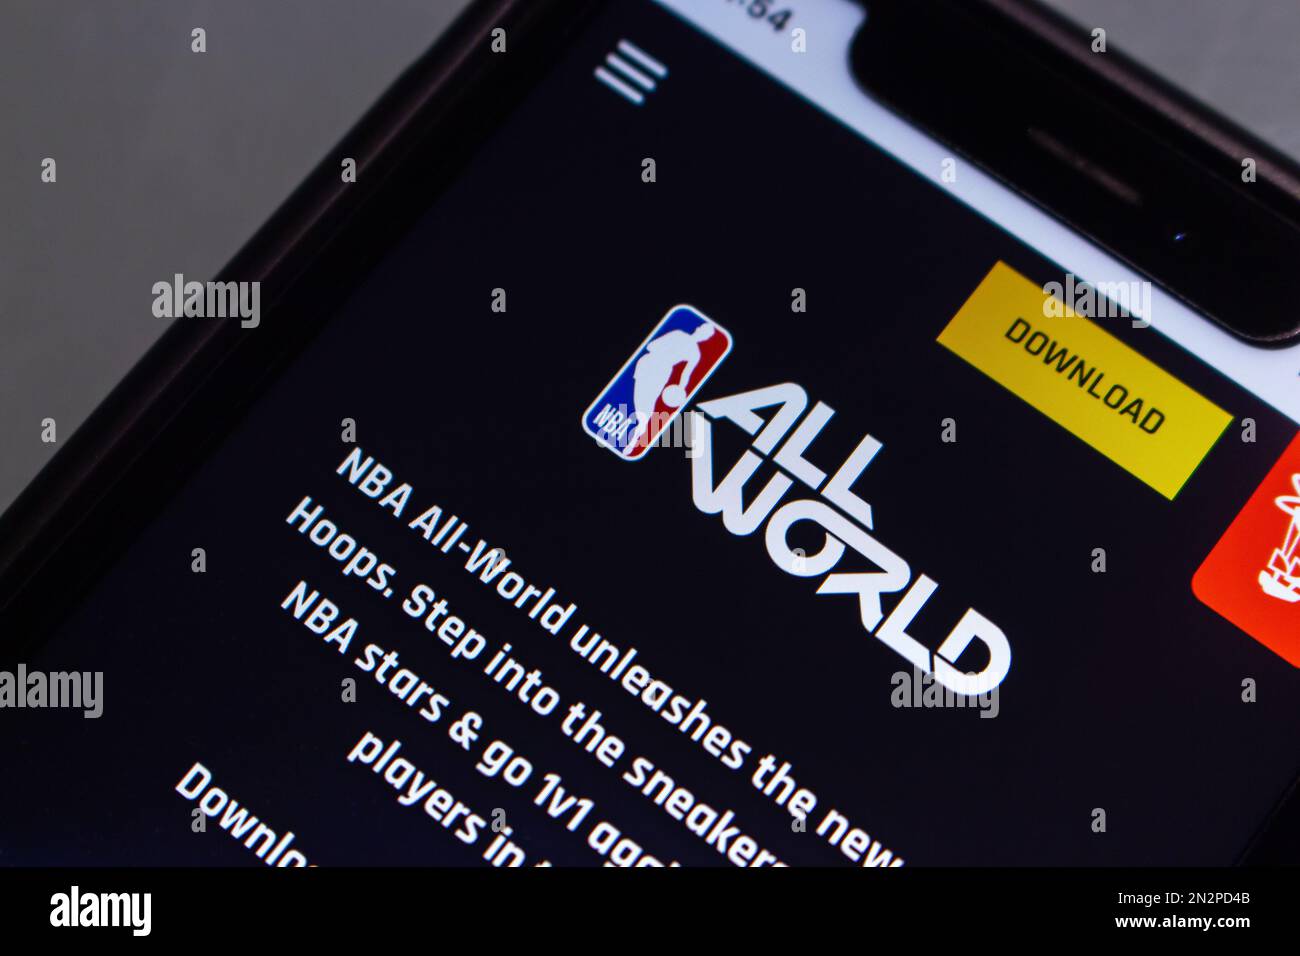 Sito web di NBA All-World, free-to-play ufficialmente autorizzato geolocalizzazione (le località reali) stile di vita NBA e gioco di basket, visto in un iPhone. Foto Stock